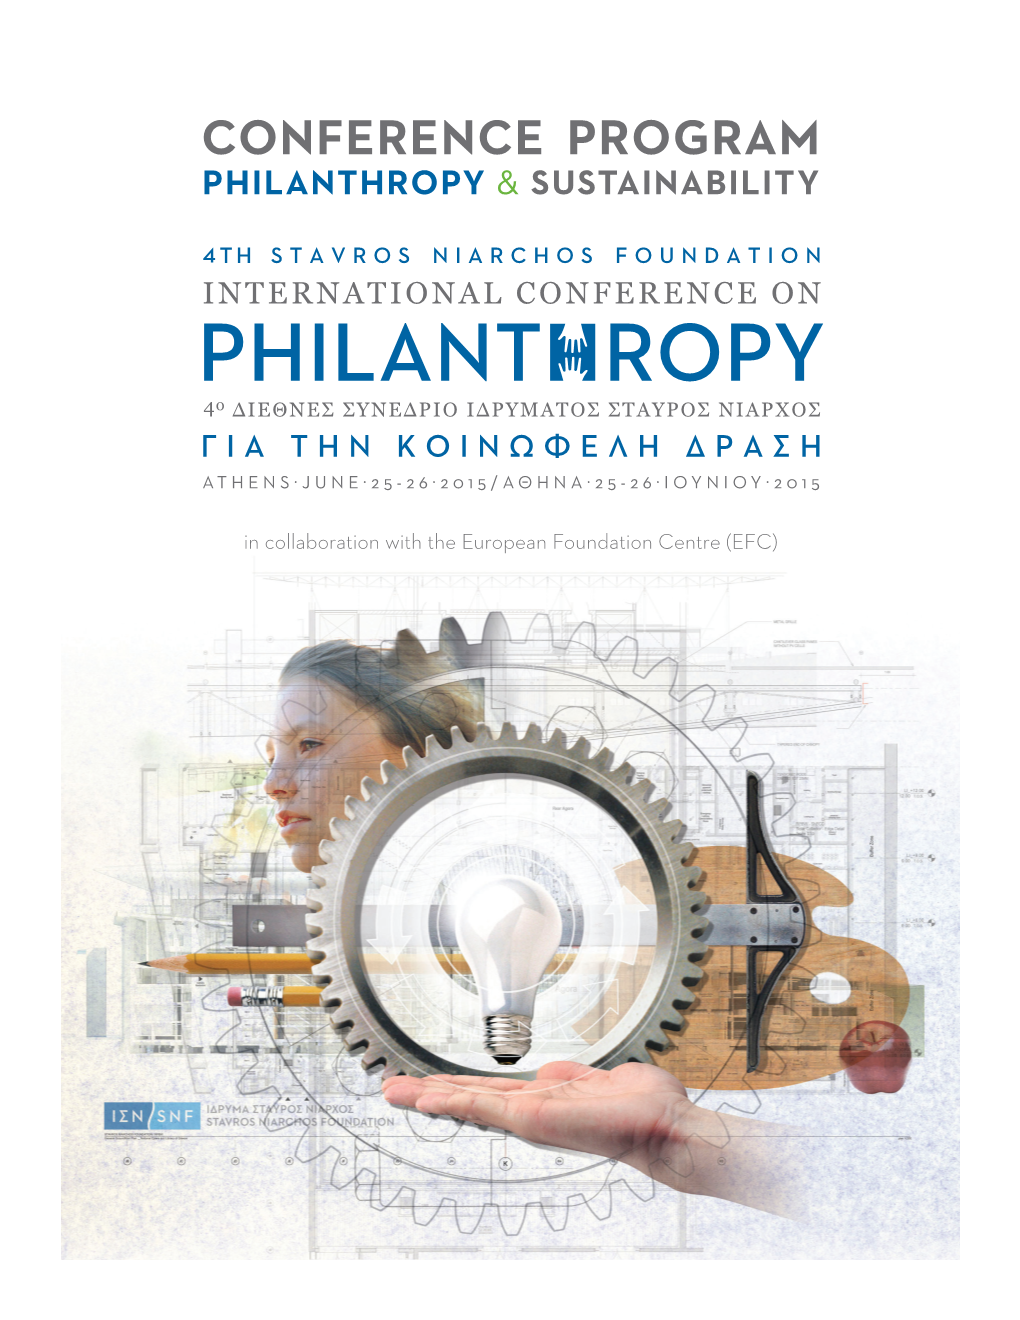 CONFERENCE PROGRAM Philanthropy & Sustainability